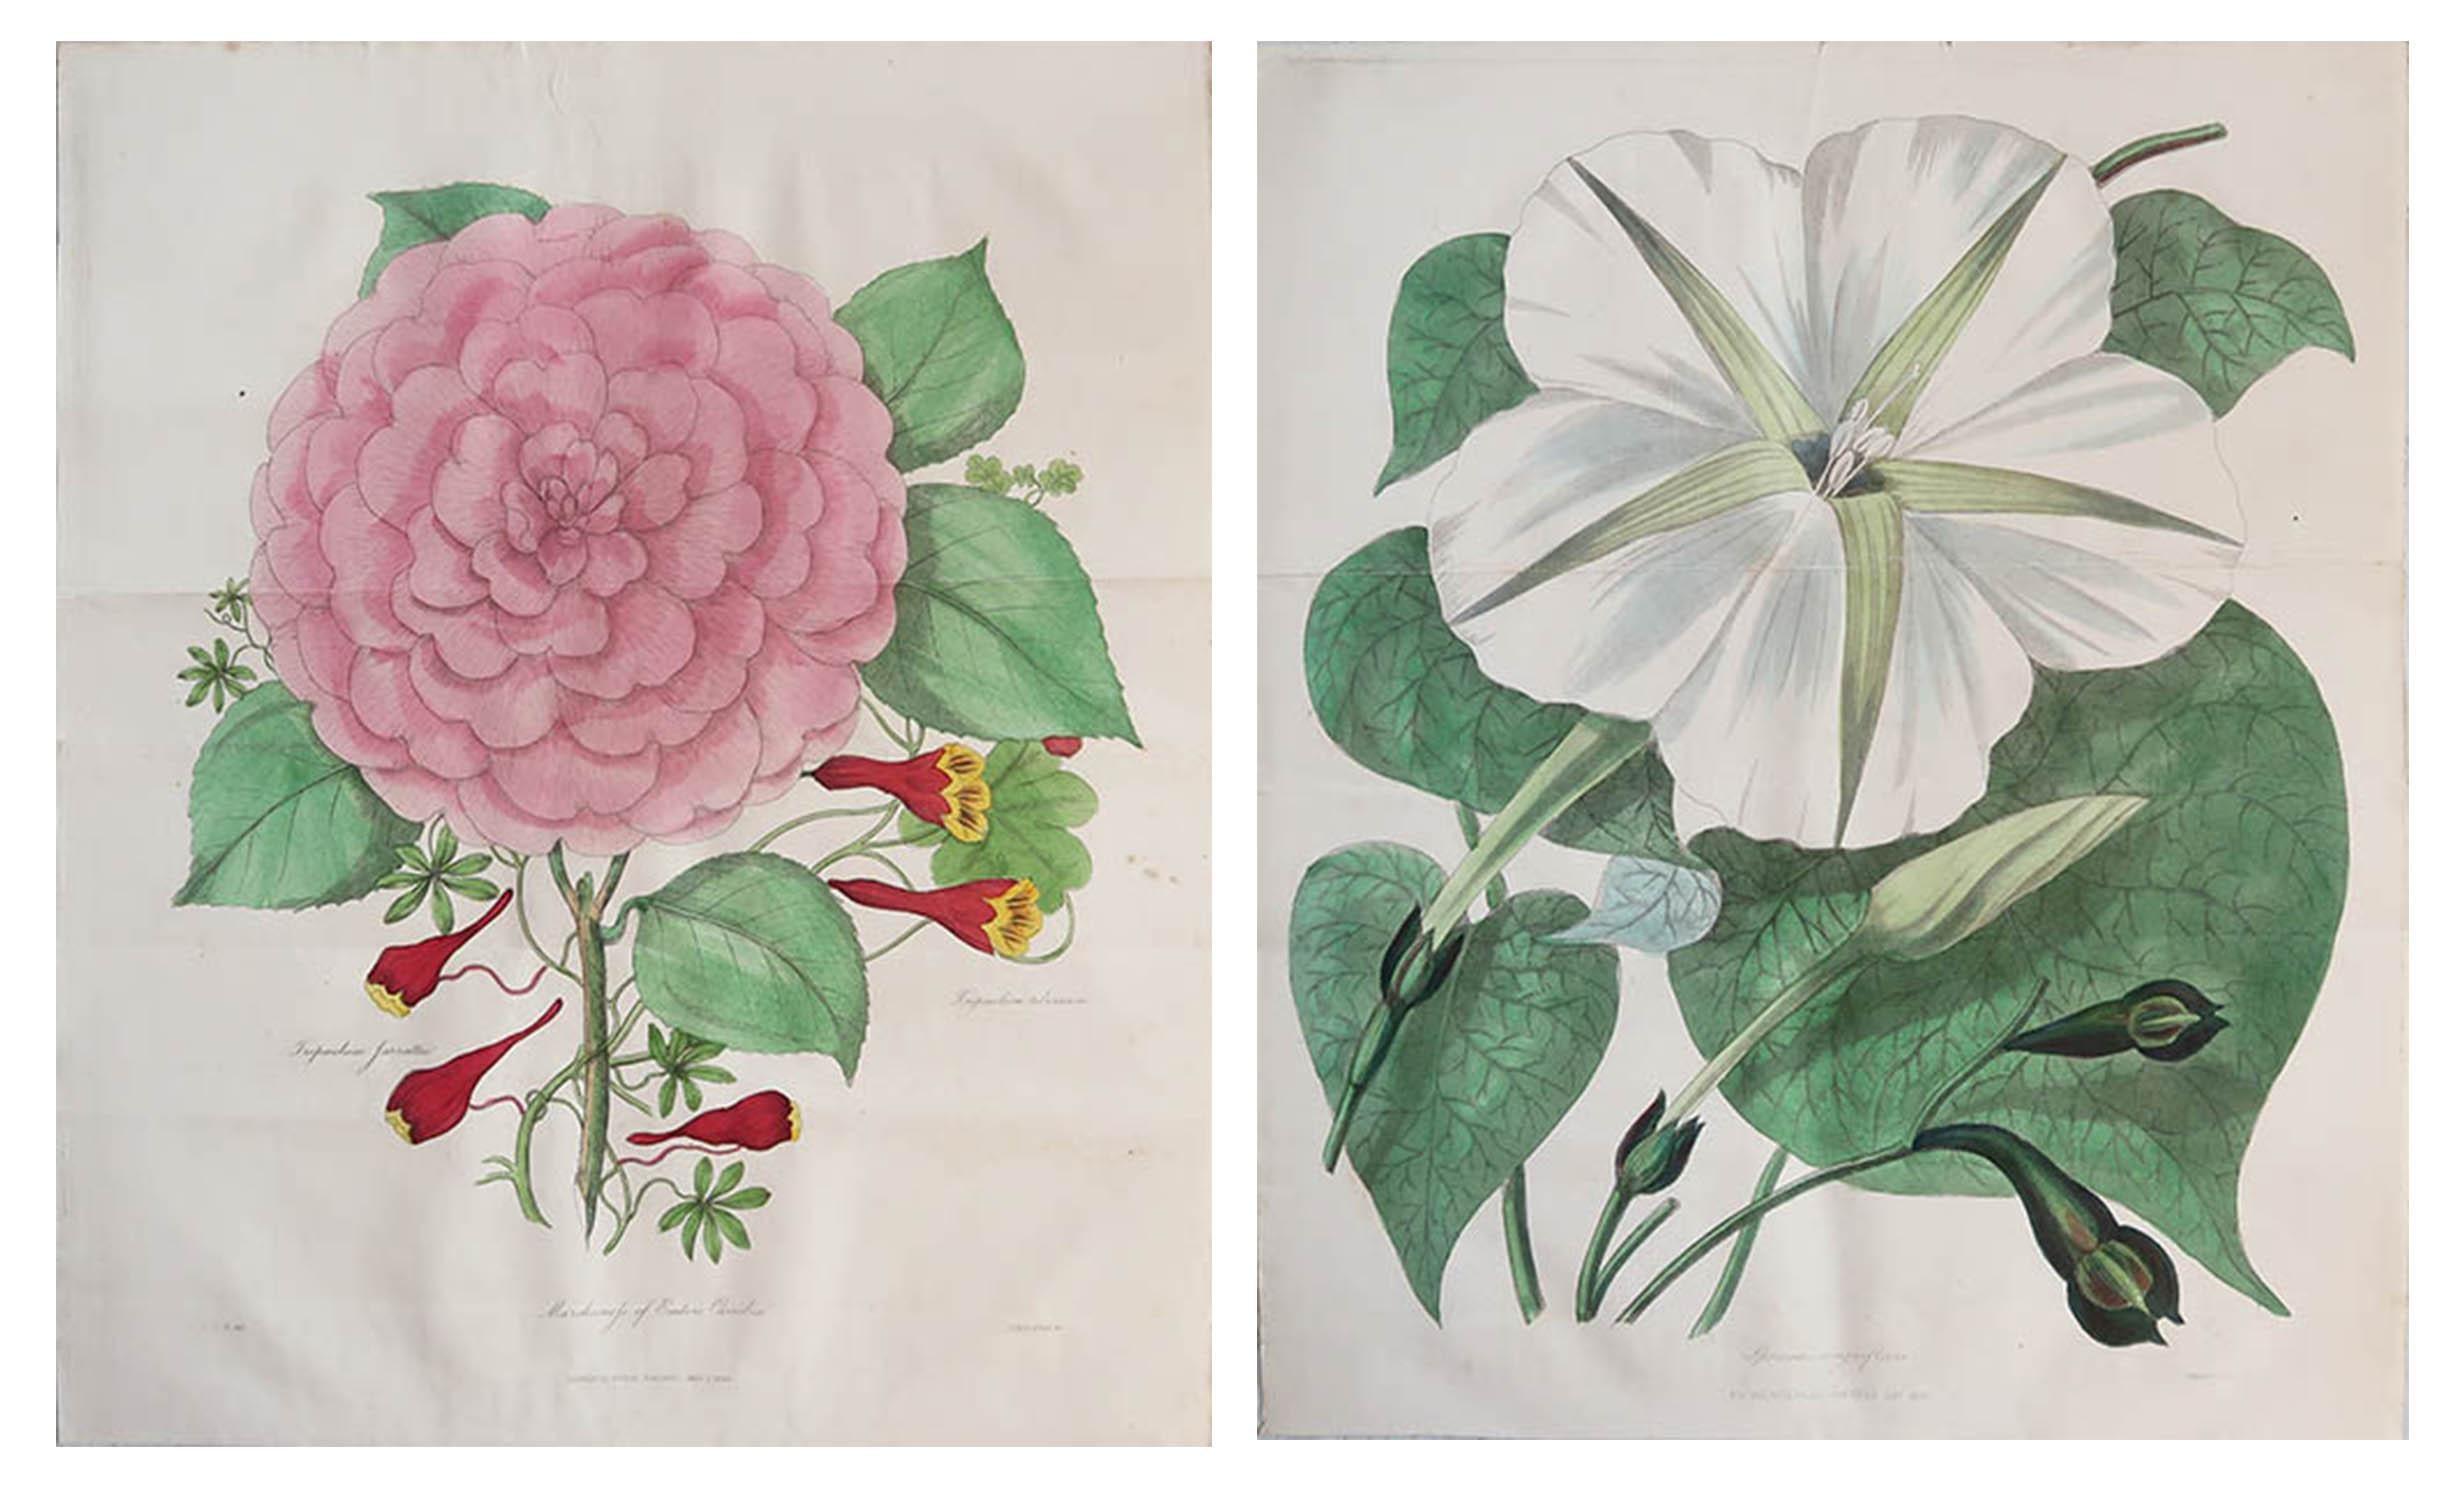 Wunderschönes Paar botanischer Drucke.

Lithografien von Alfred Adlard

Nach C.W. Harrison

Original-Handfarbe

Veröffentlicht, 1838

Ungerahmt.

Die angegebenen Maße beziehen sich auf einen Druck.

